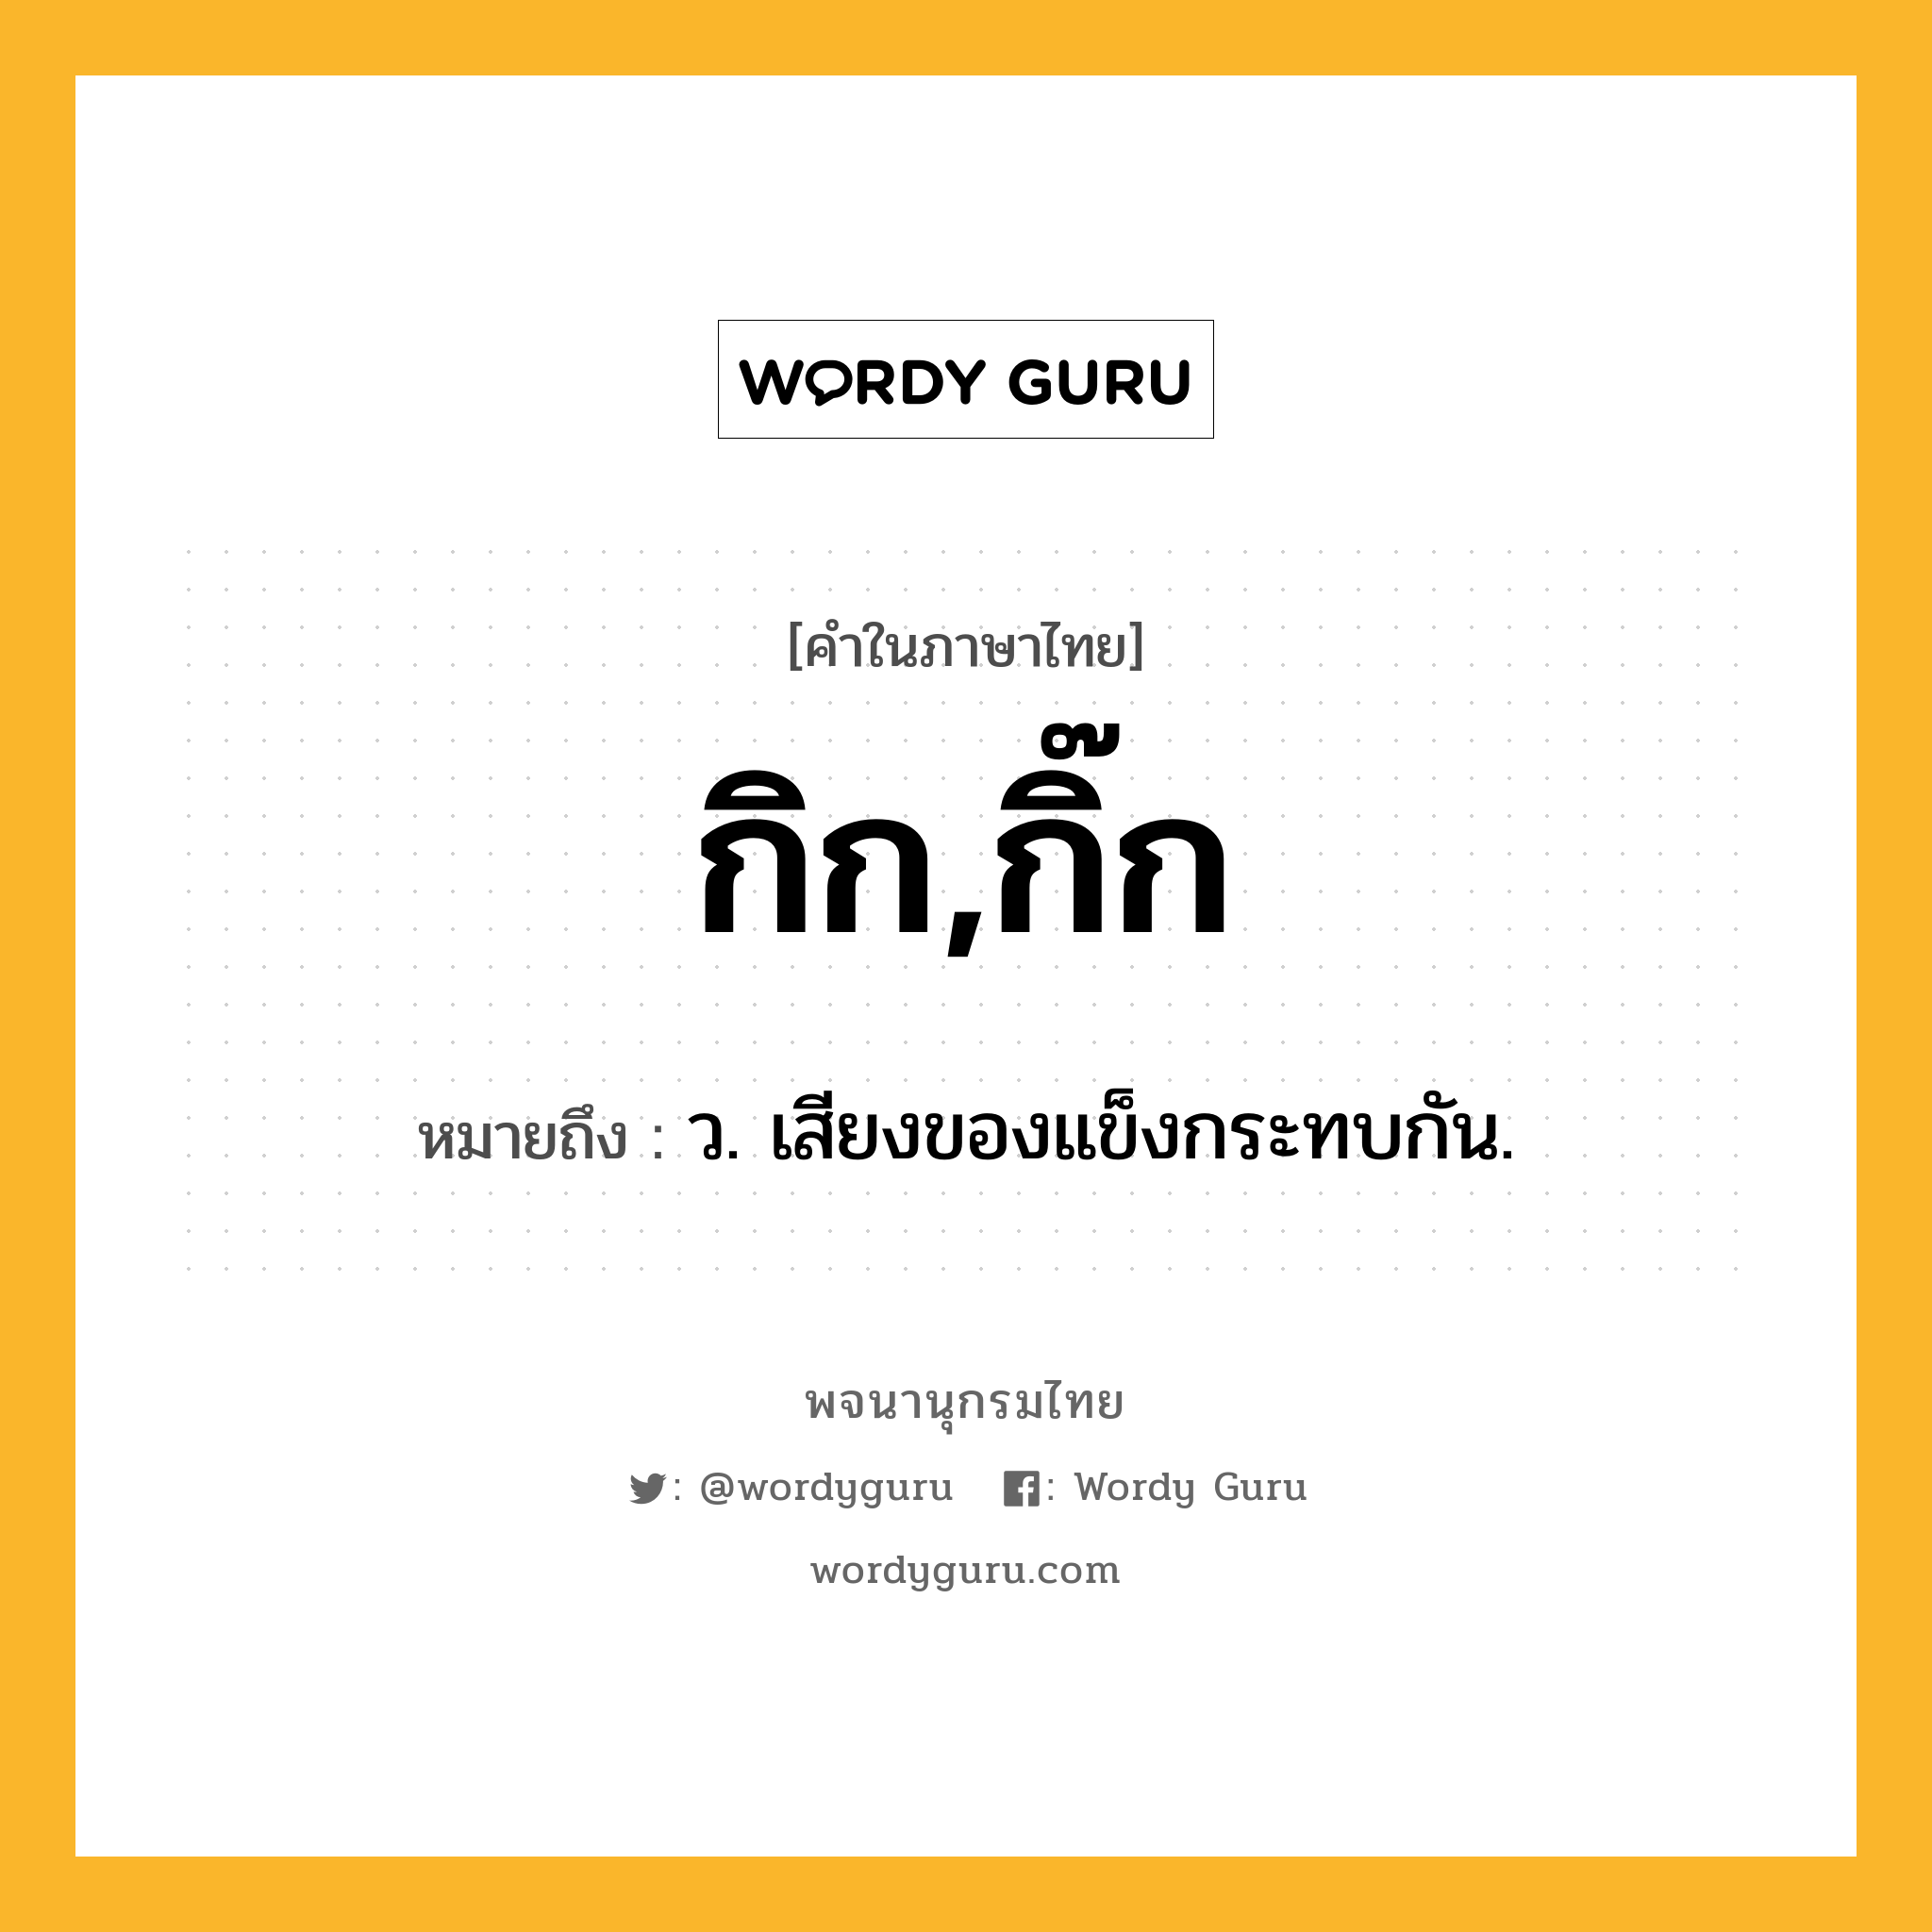 กิก,กิ๊ก ความหมาย หมายถึงอะไร?, คำในภาษาไทย กิก,กิ๊ก หมายถึง ว. เสียงของแข็งกระทบกัน.